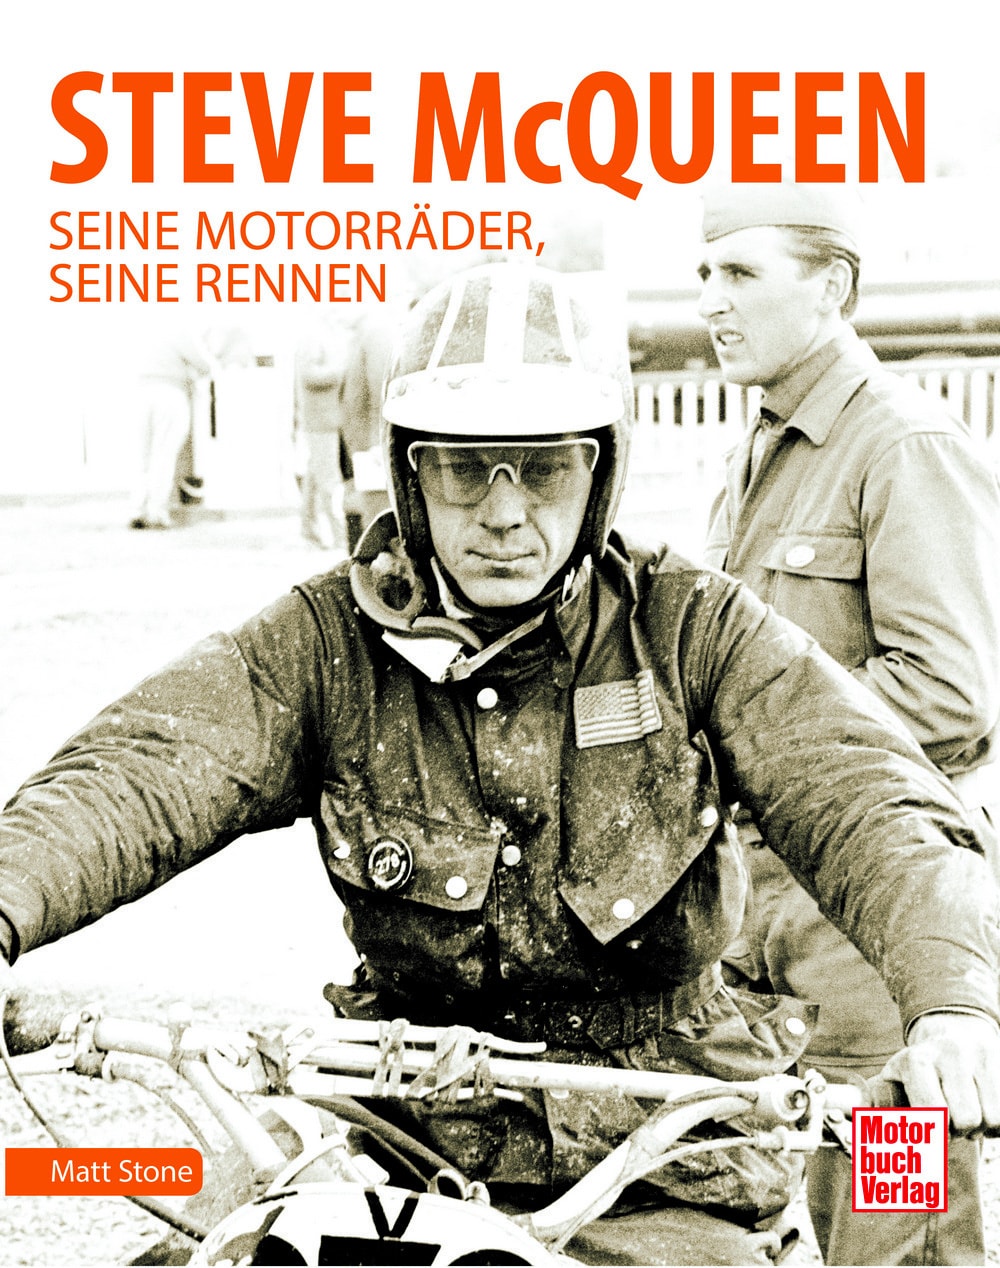 "Steve McQueen: Seine Motorräder, seine Rennen" von Matt Stone. Buchcover. Quelle: ampnet